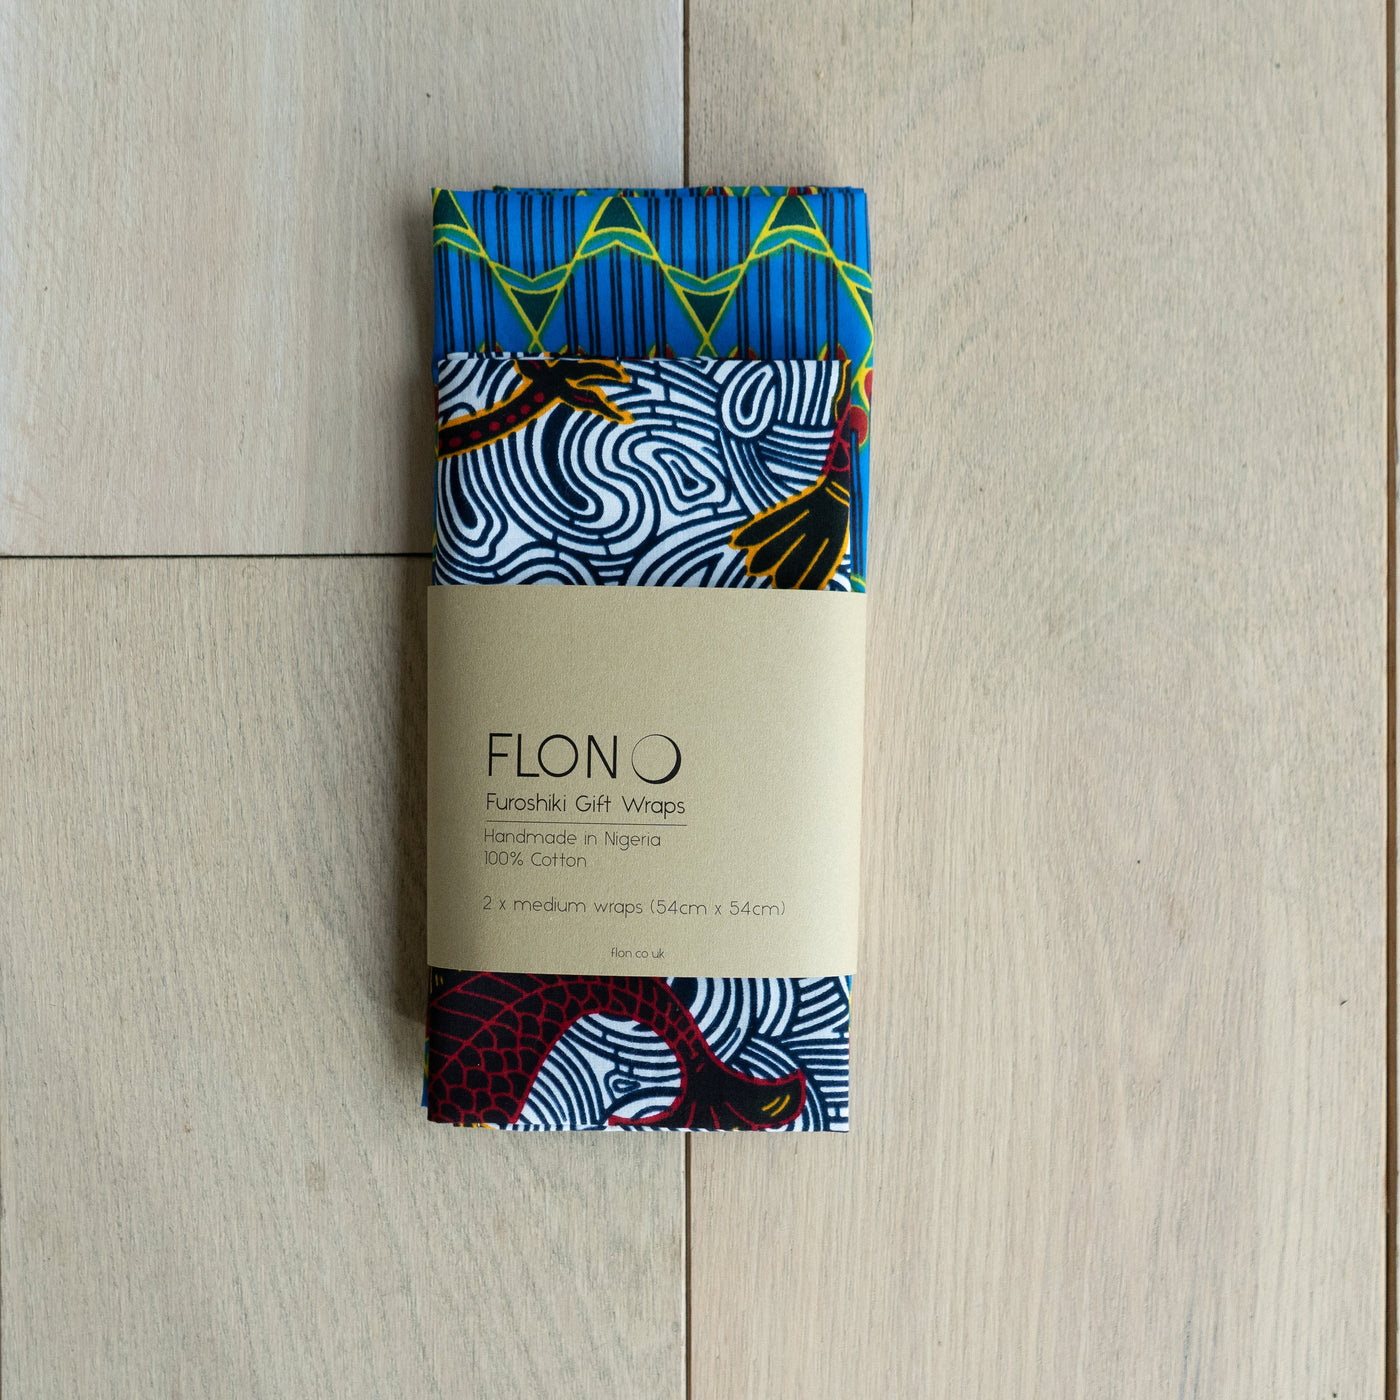 2 X Furoshiki inspired Ankara Gift Wraps